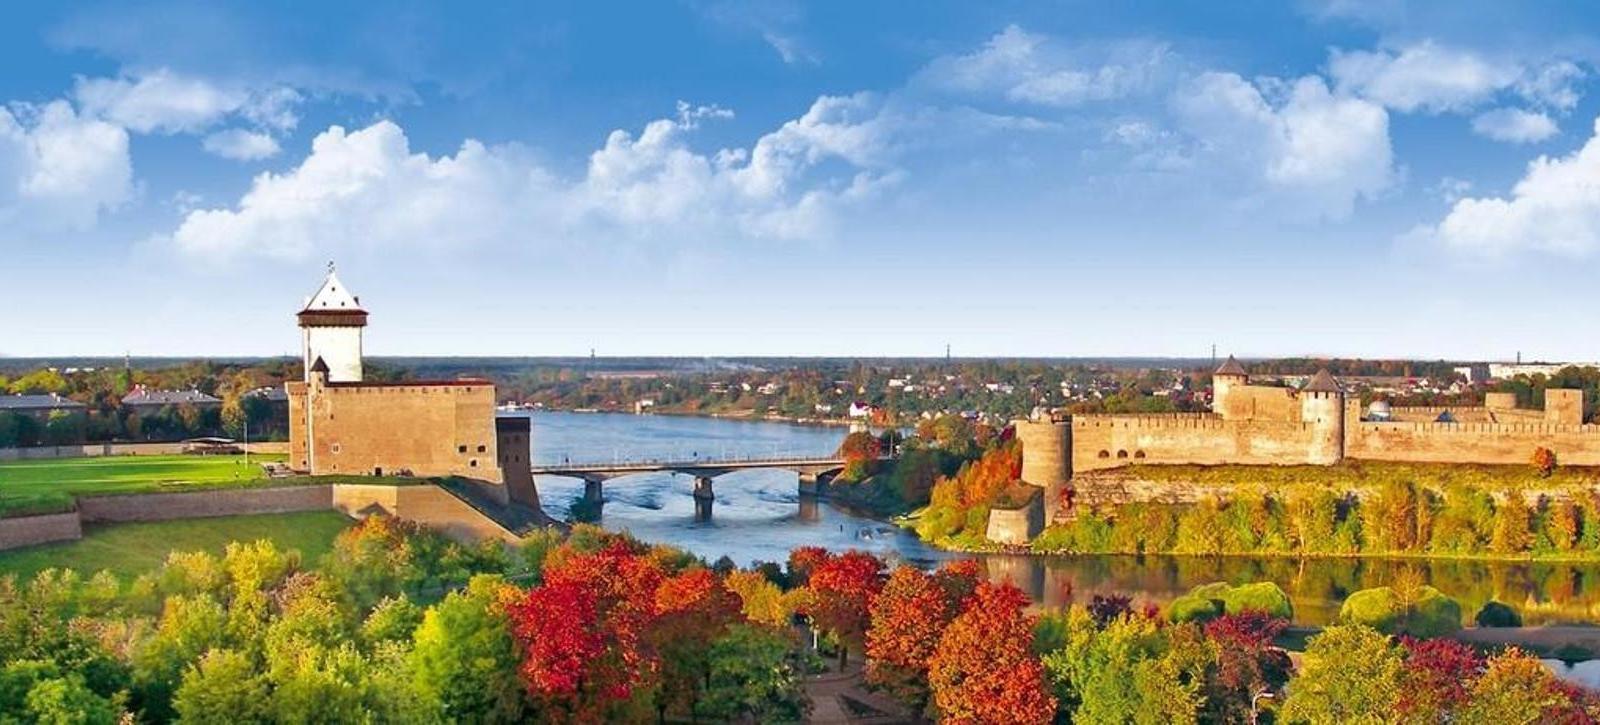 Narva - Eesti sügispealinn, erinevad kultuurisündmused